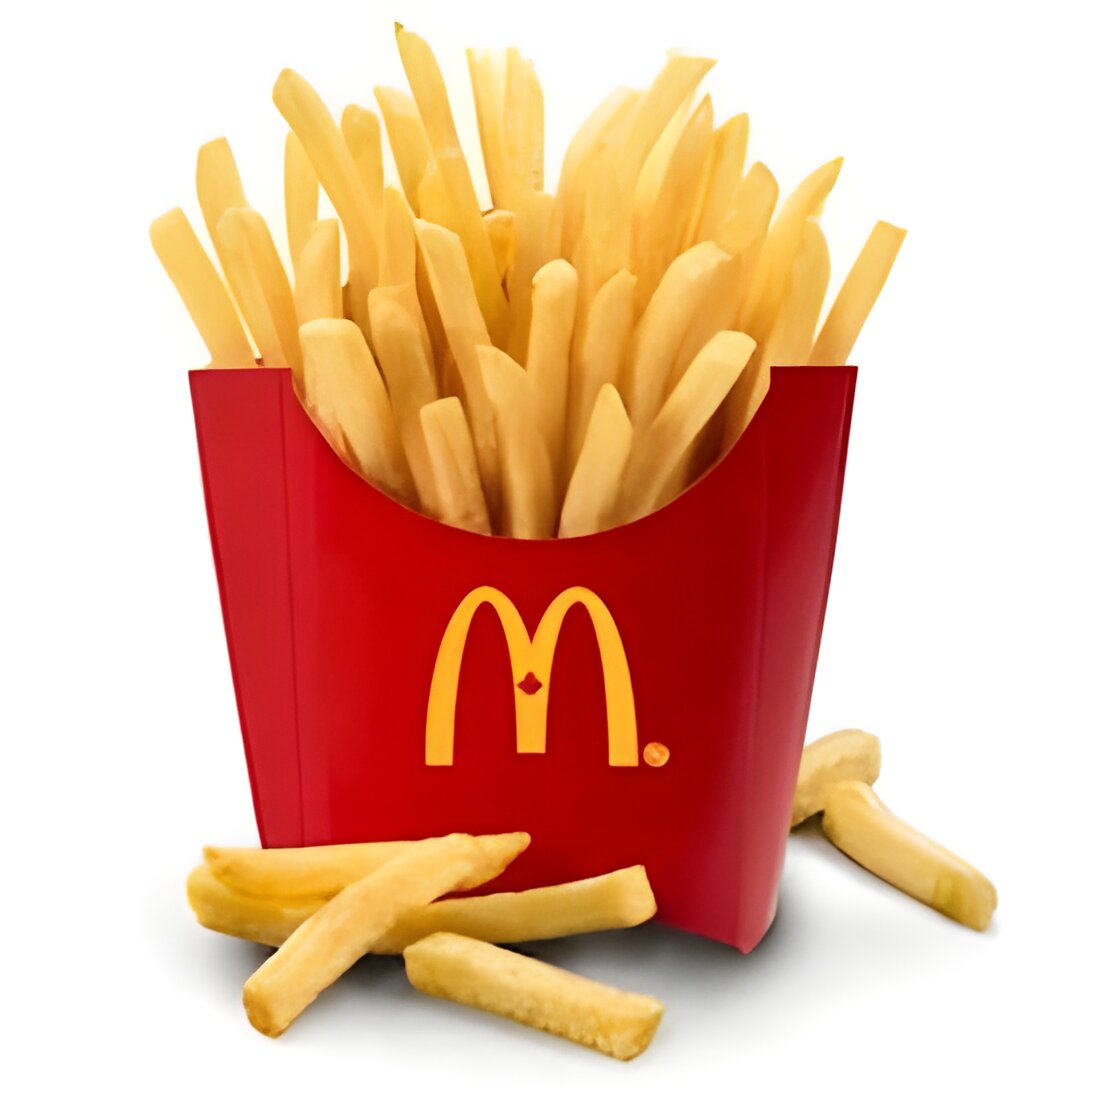 Free Fries at McDonald's